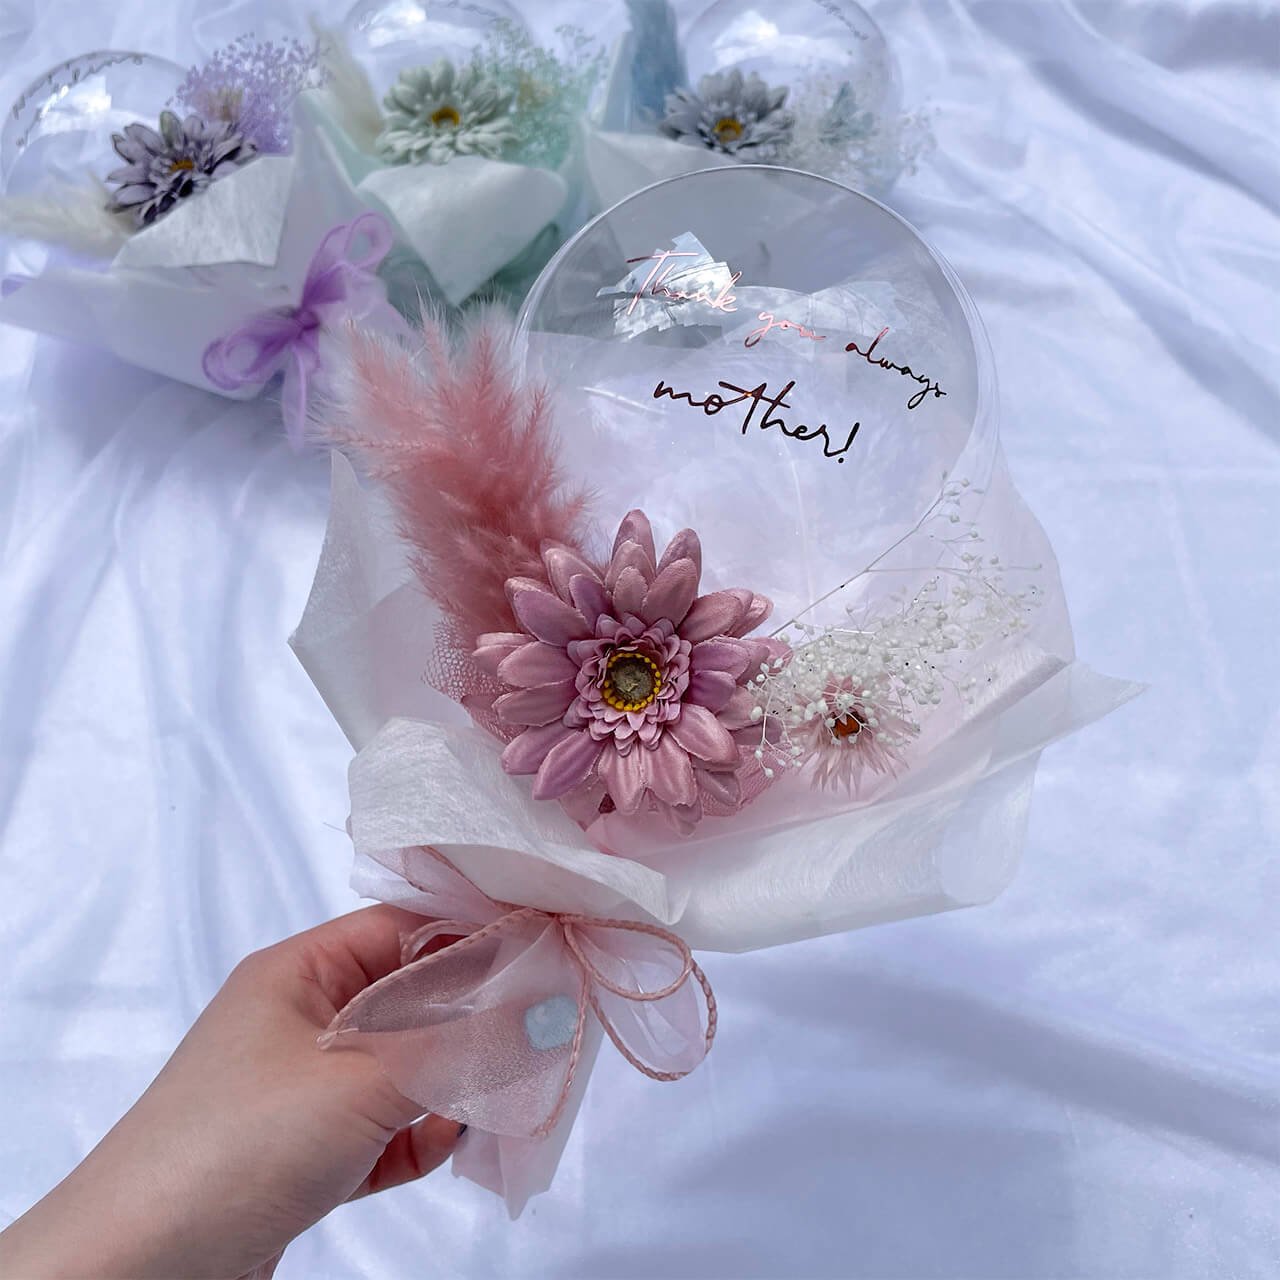 Stella bule Mini Bouquet - Flower Balloon Bouquet - ステラブルーフラワーバルーンブーケ -  チャビーバルーン 大阪 名古屋 滋賀にあるおしゃれなバルーン電報 バルーン装飾 バルーンギフトのことならチャビーバルーン